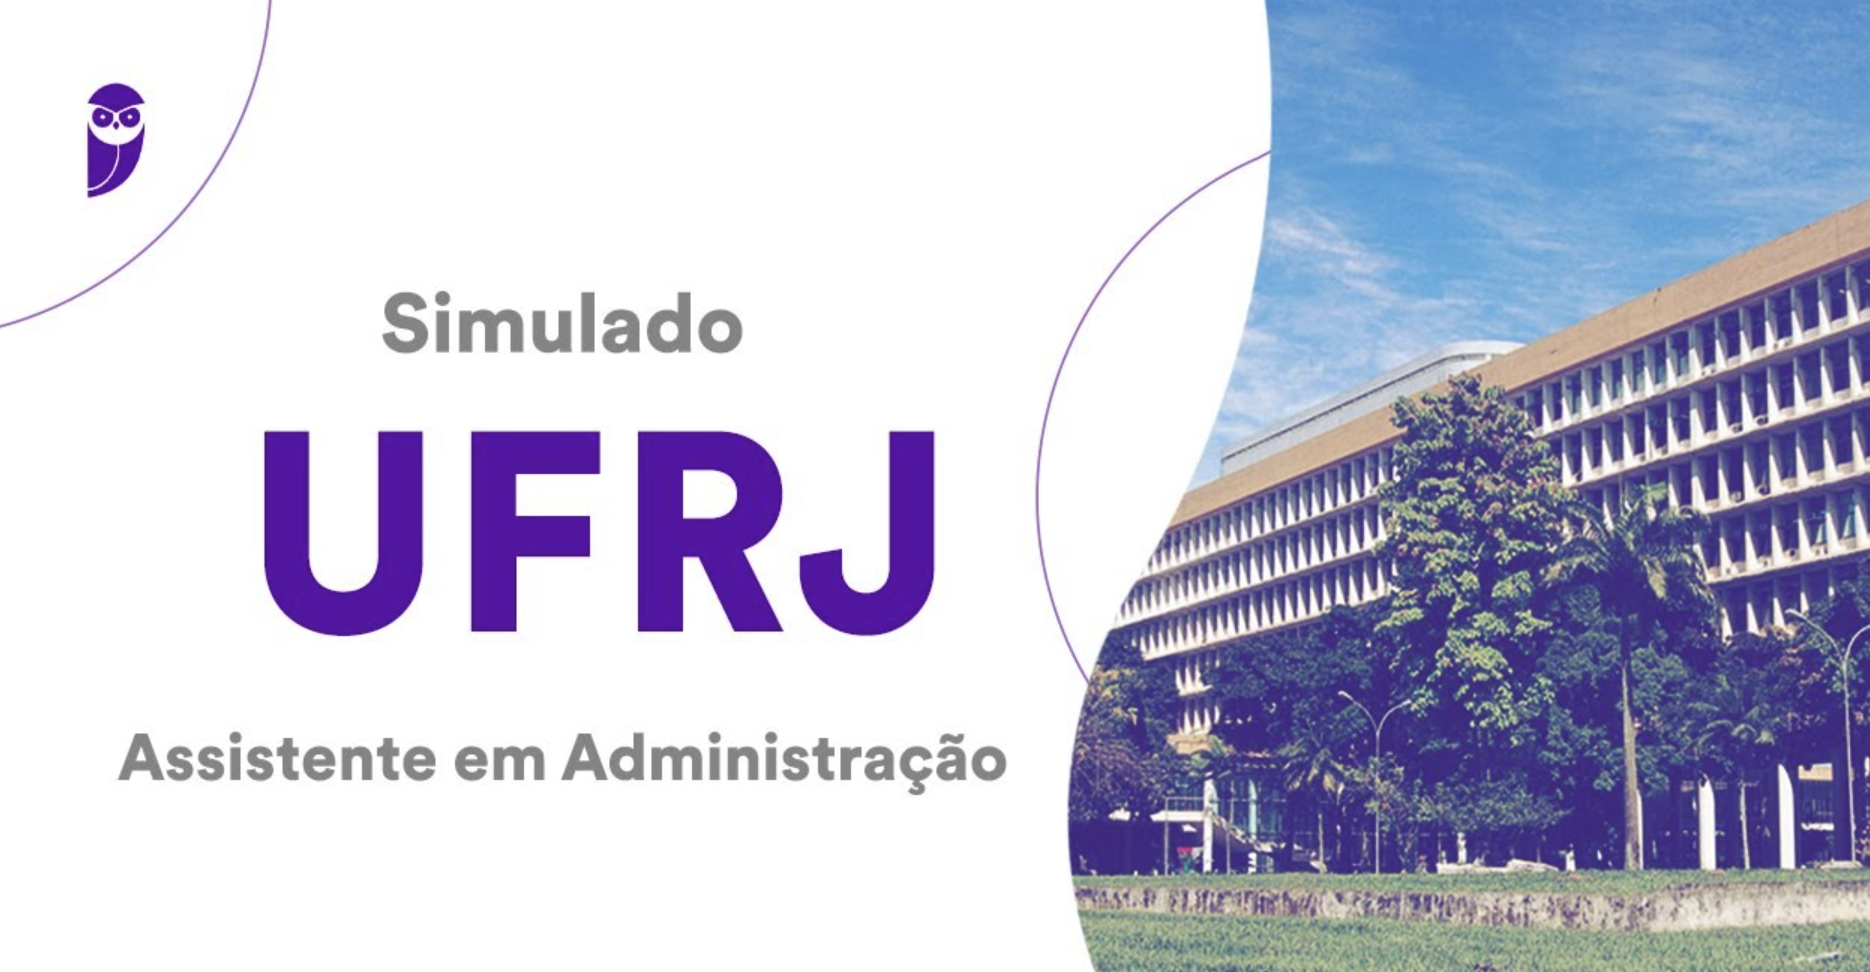 Concurso UFRJ: simulado para assistente de administração